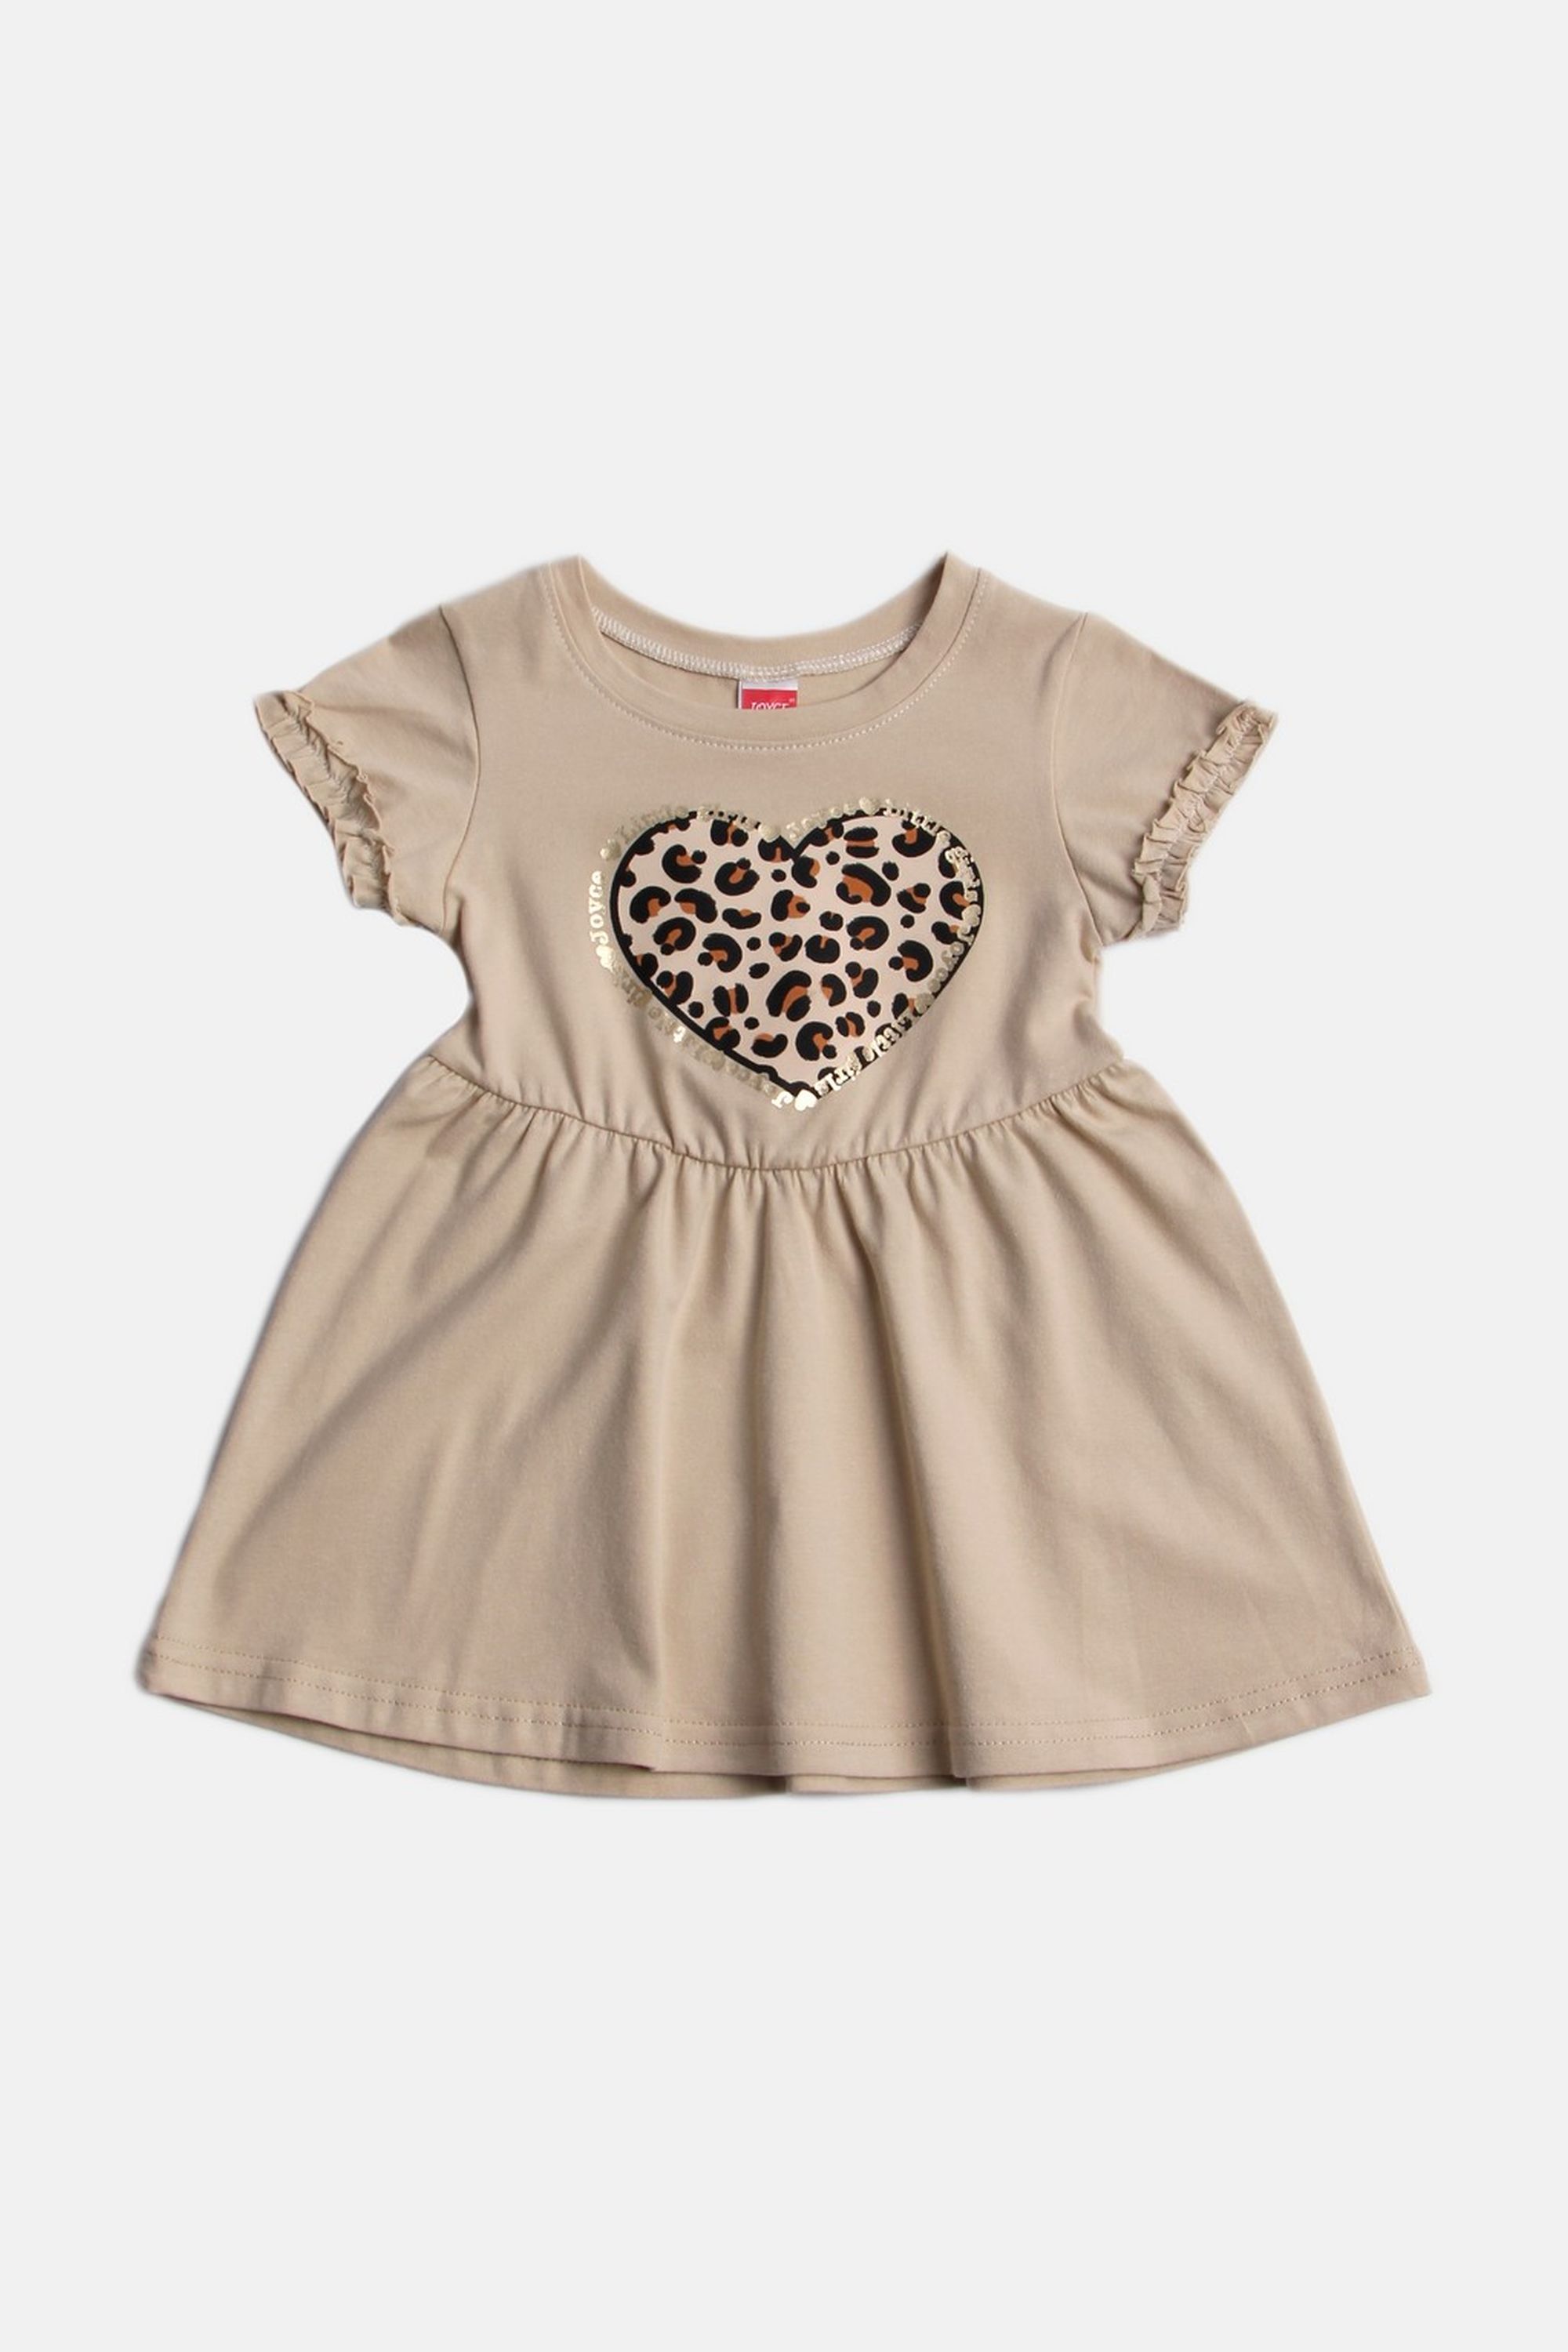 Dívčí bavlněné šaty "ANIMAL HEART"/Malinová, béžová Barva: Béžová, Velikost: vel. 3 (98/100 cm)